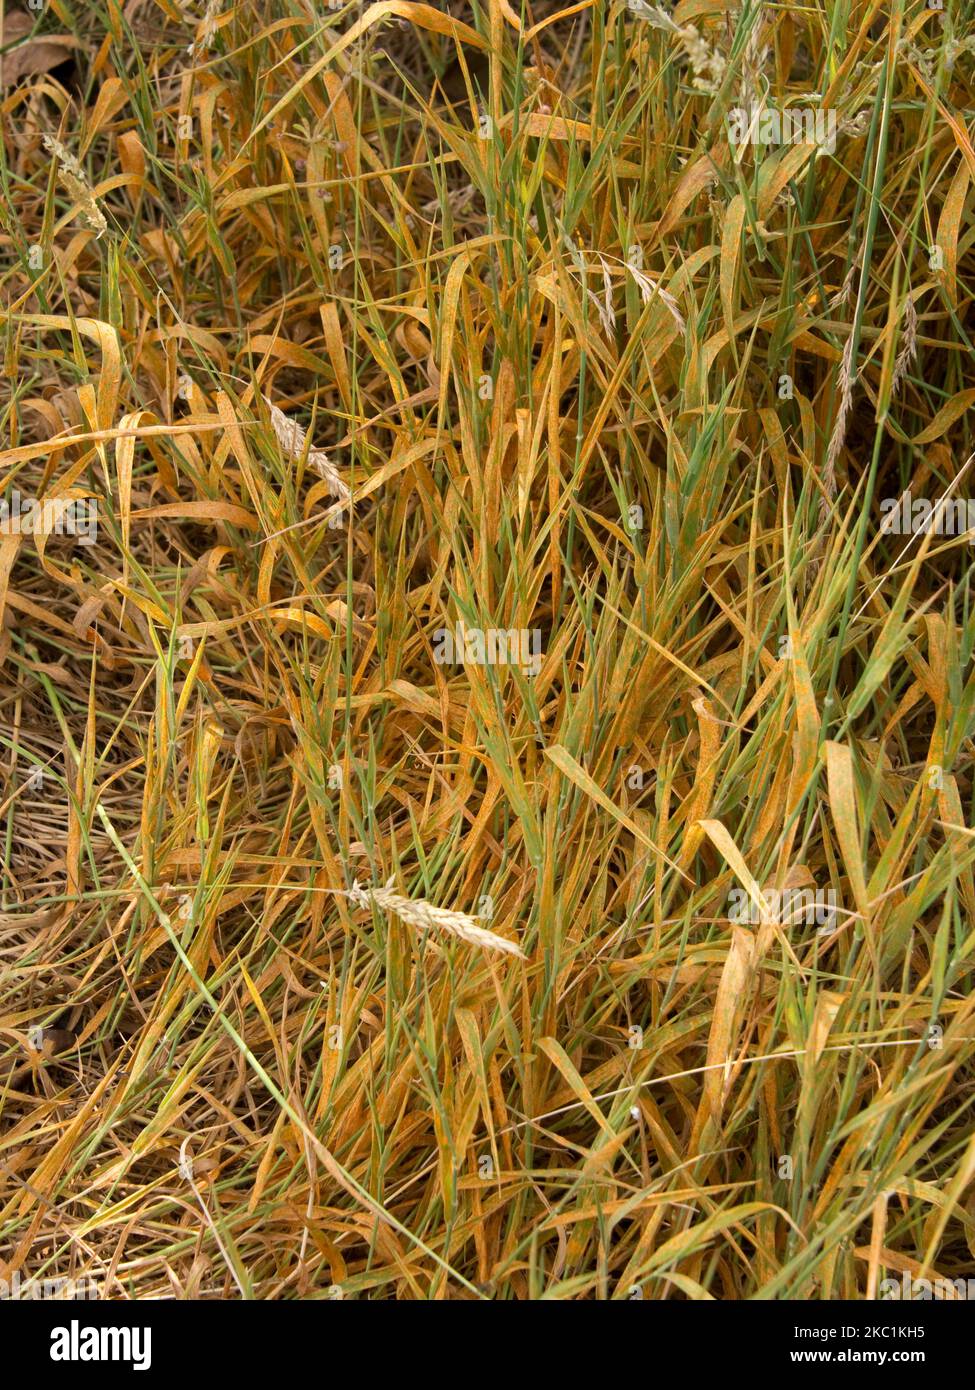 Kronenrost (Puccinia coronata) eine schwere orangene Infektion auf Yorkshire Nebel (Holcus lanatus), einem wilden Gras, im Juli Stockfoto